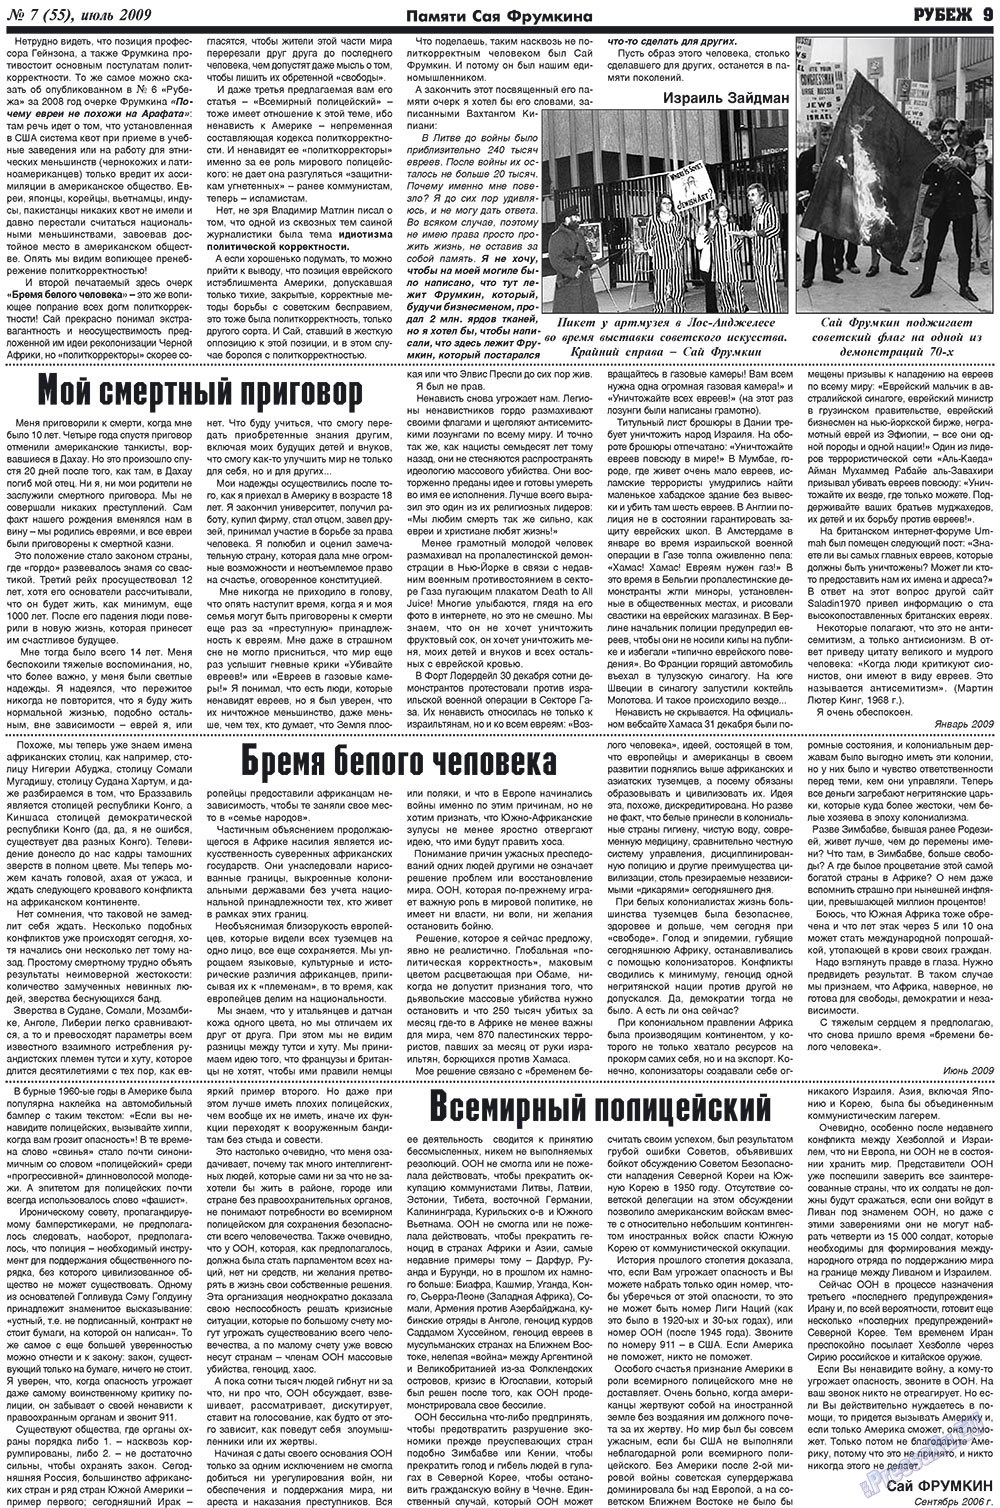 Рубеж (газета). 2009 год, номер 7, стр. 9